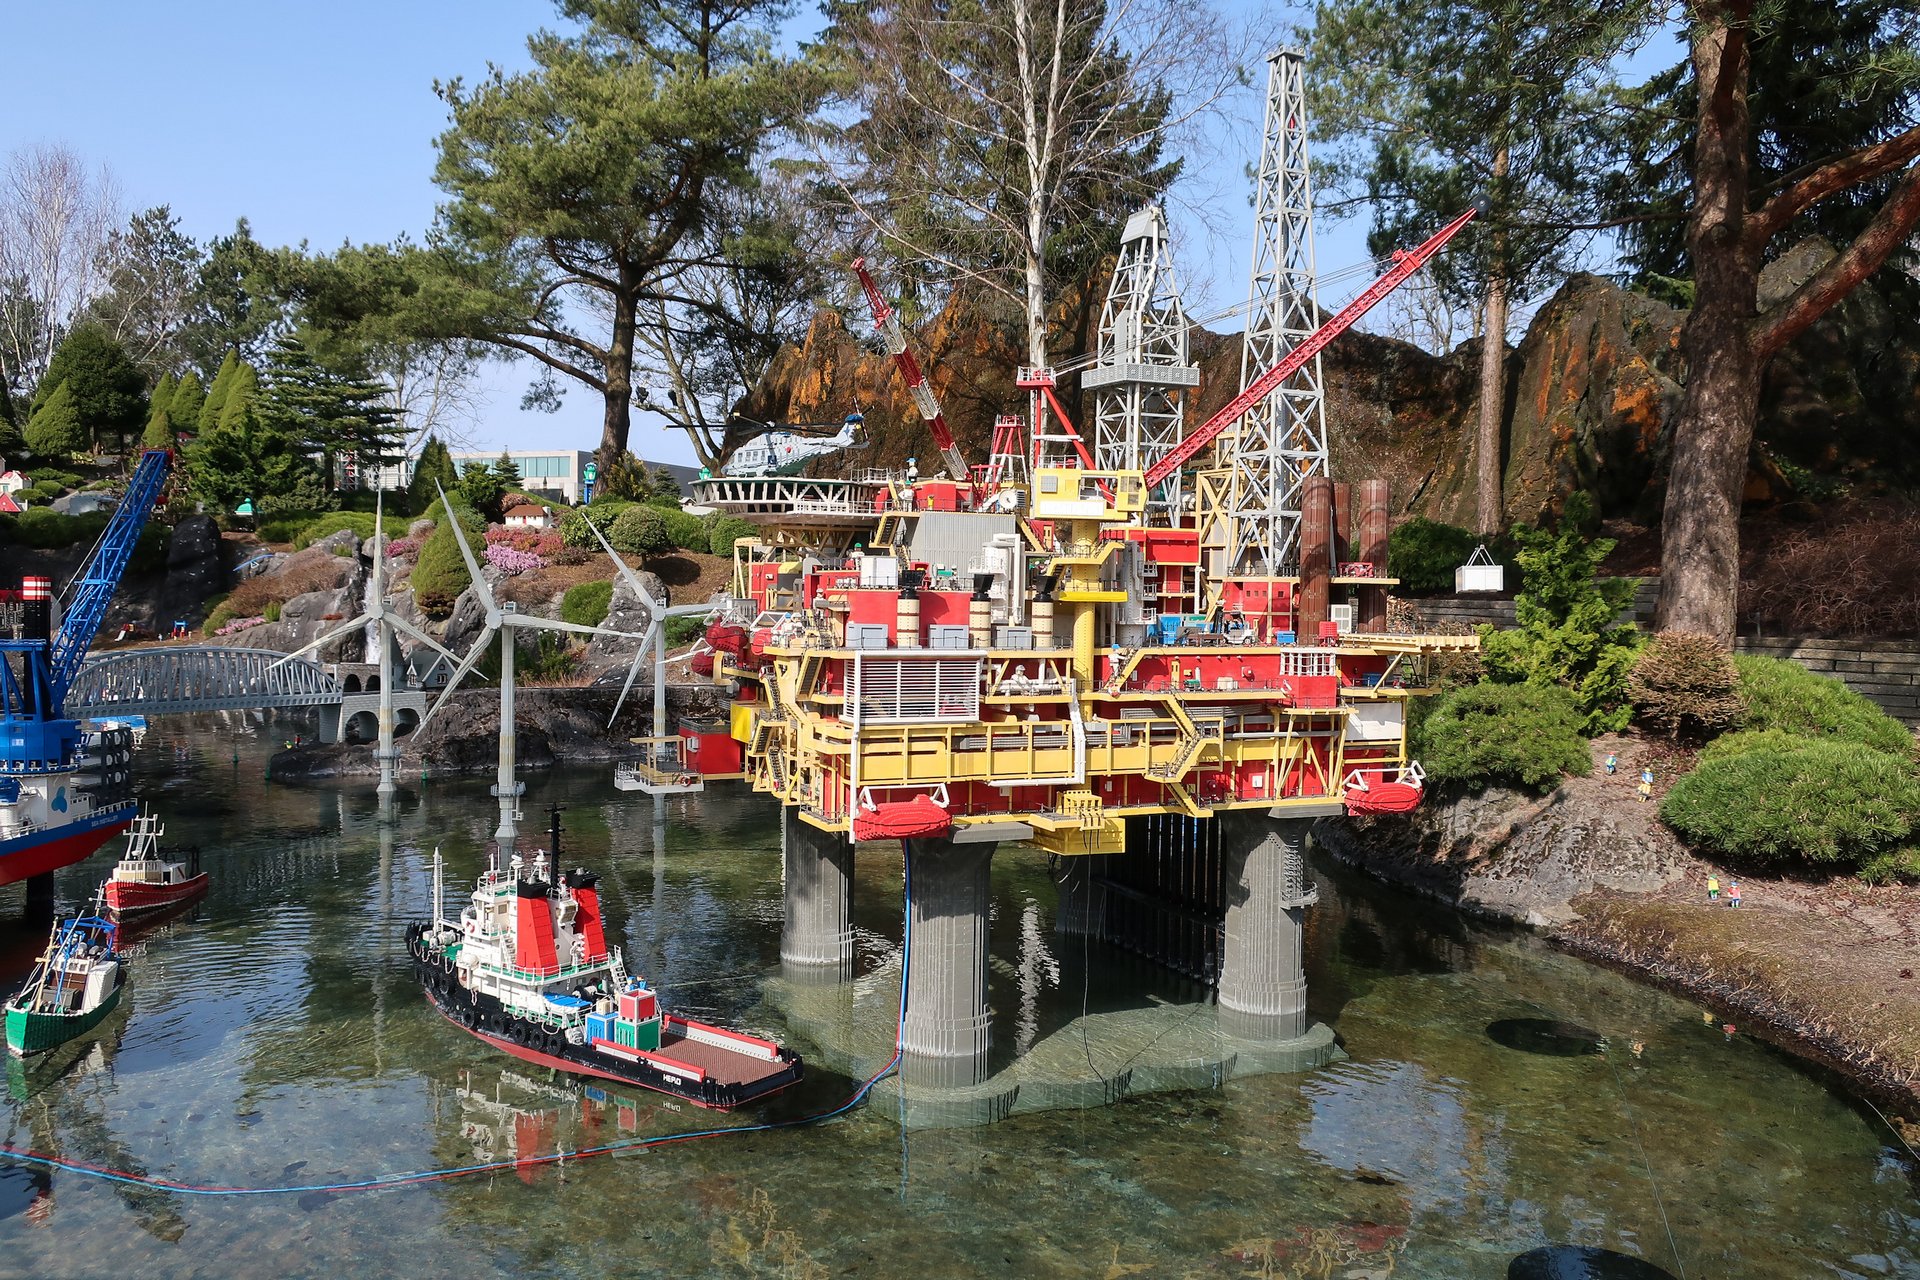 Макет плавучей нефтяной платформы в парке развлечений Леголенд в Дании